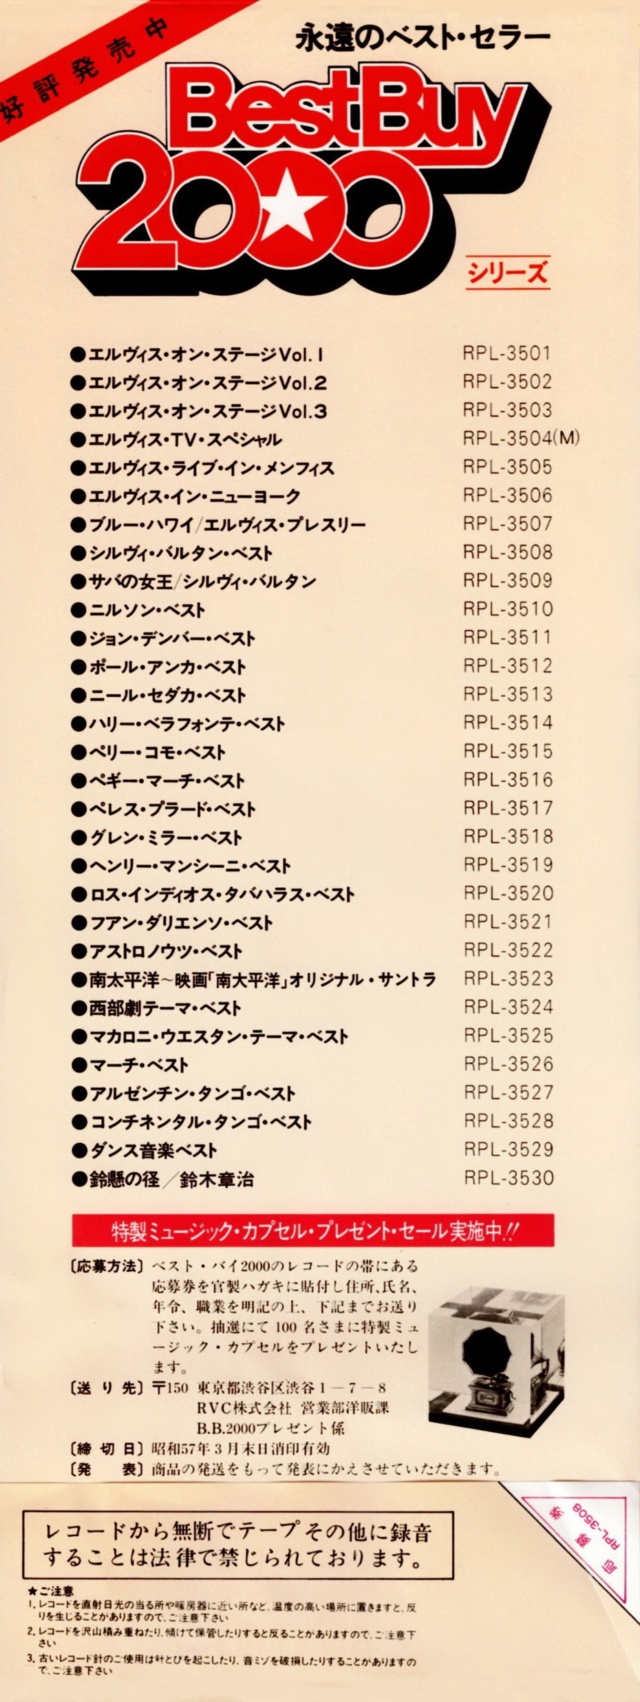 Discographie Japonaise - 4ème partie (33 T COMPILATION) - Page 16 Jpn_rp44